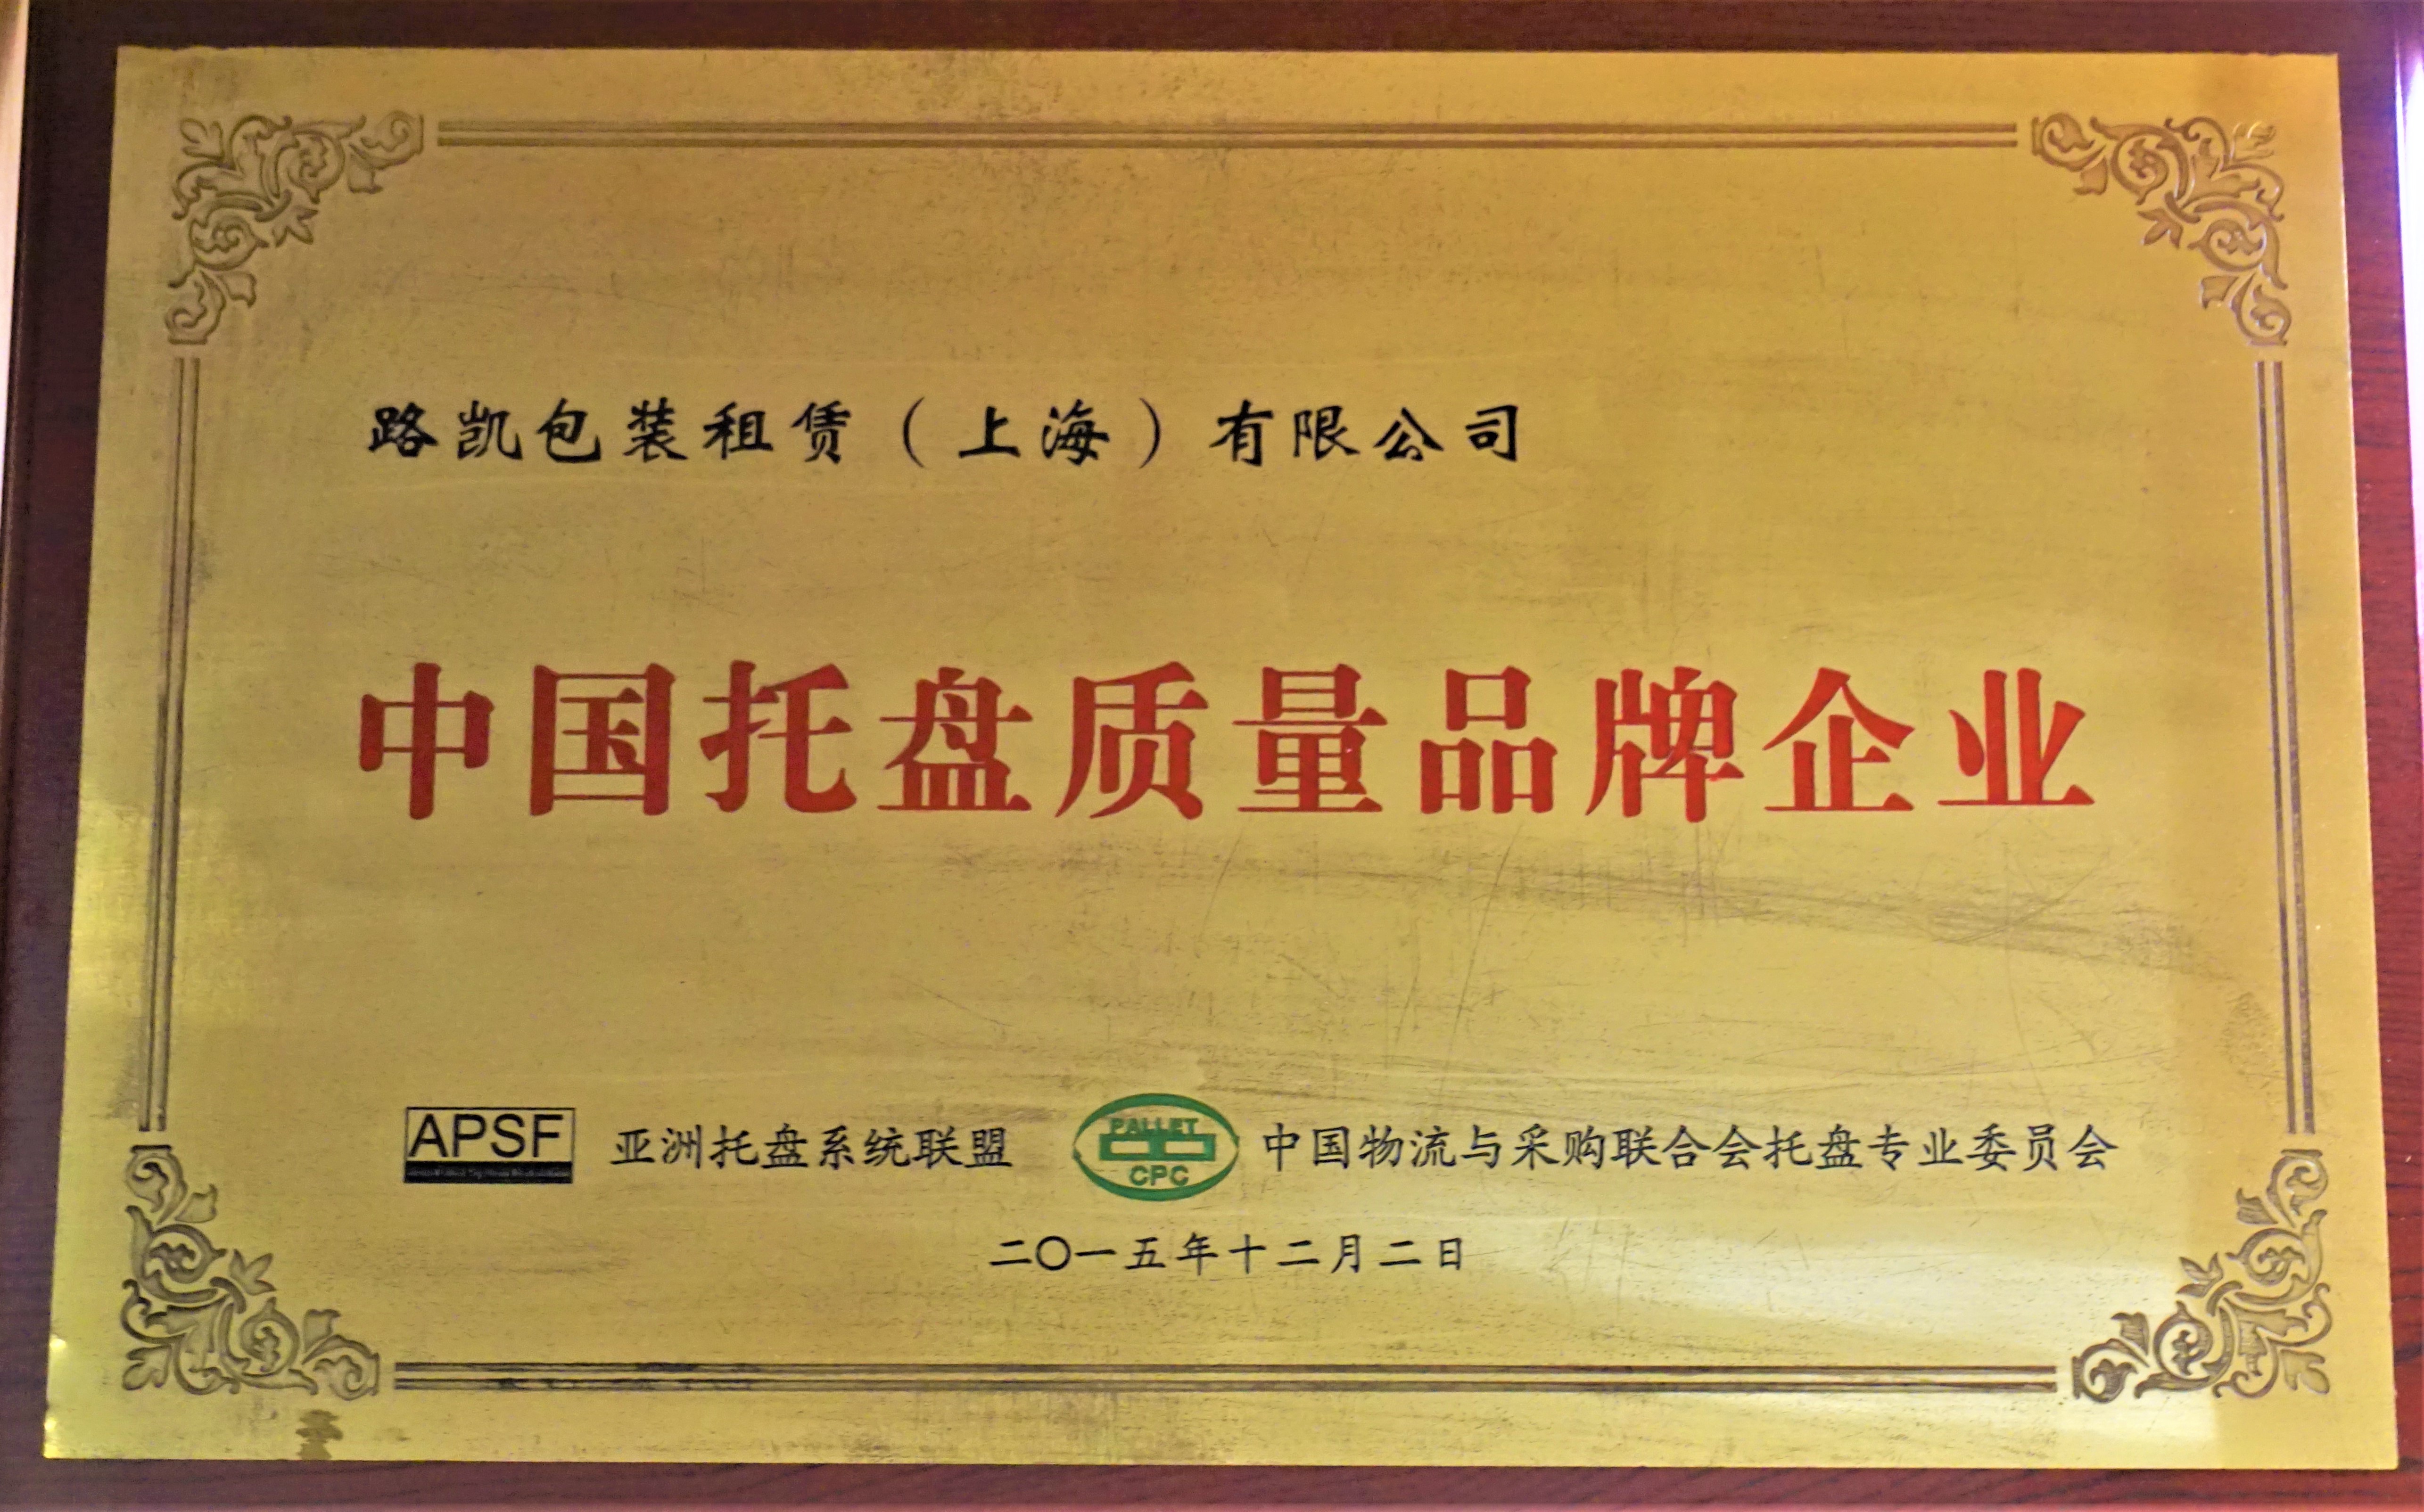 2015中国托盘质量品牌企业-中国物流与采购联合会托盘专业委员会.JPG